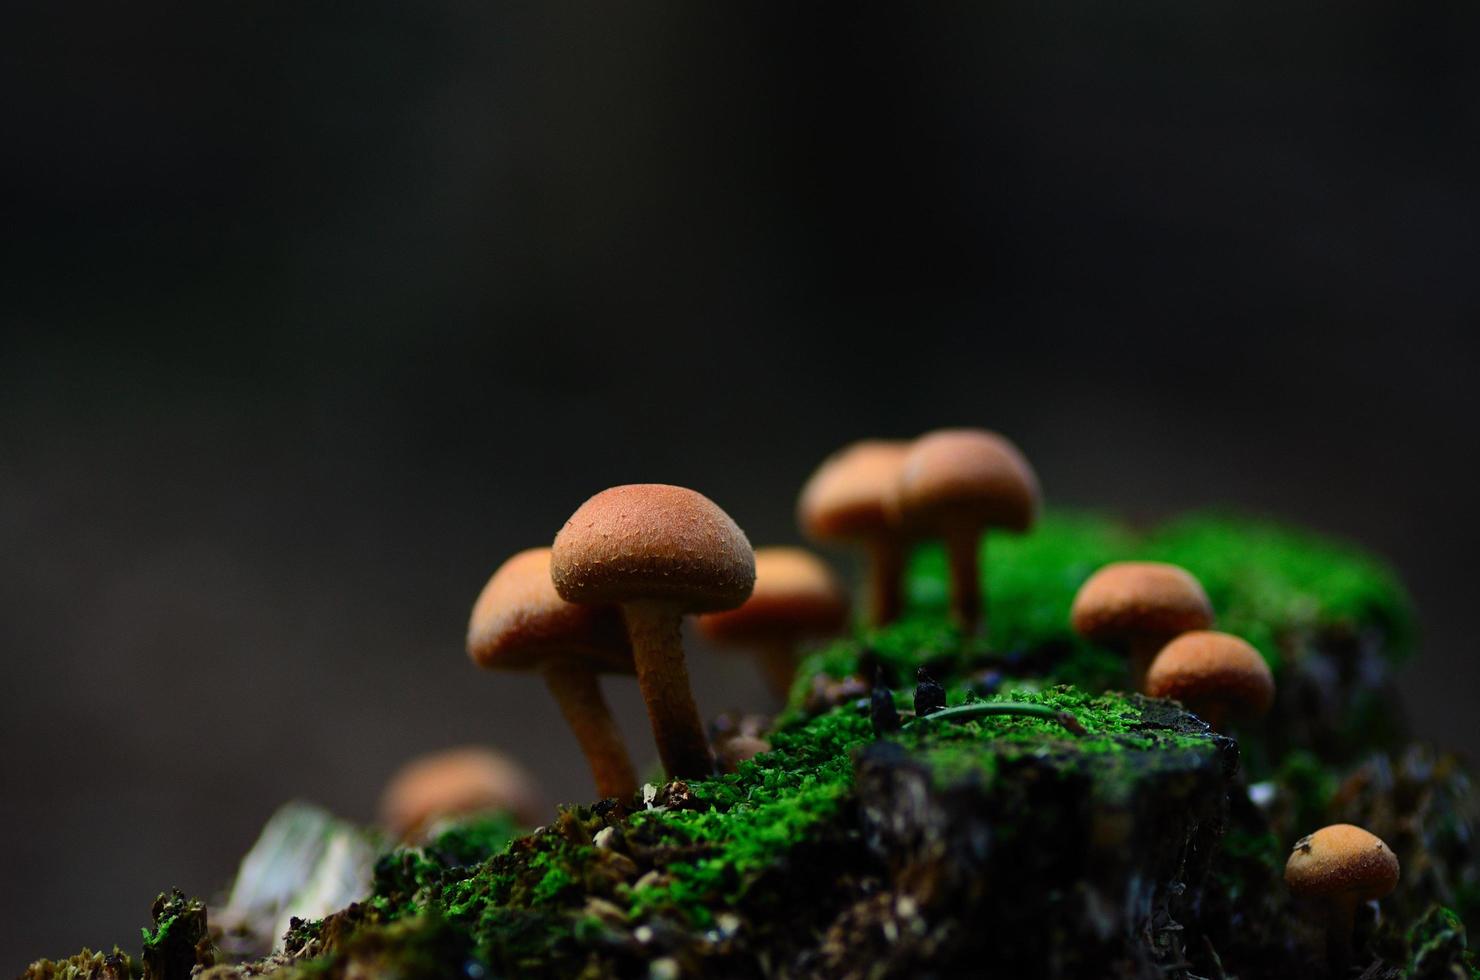 mushrooms on moss in autumn photo